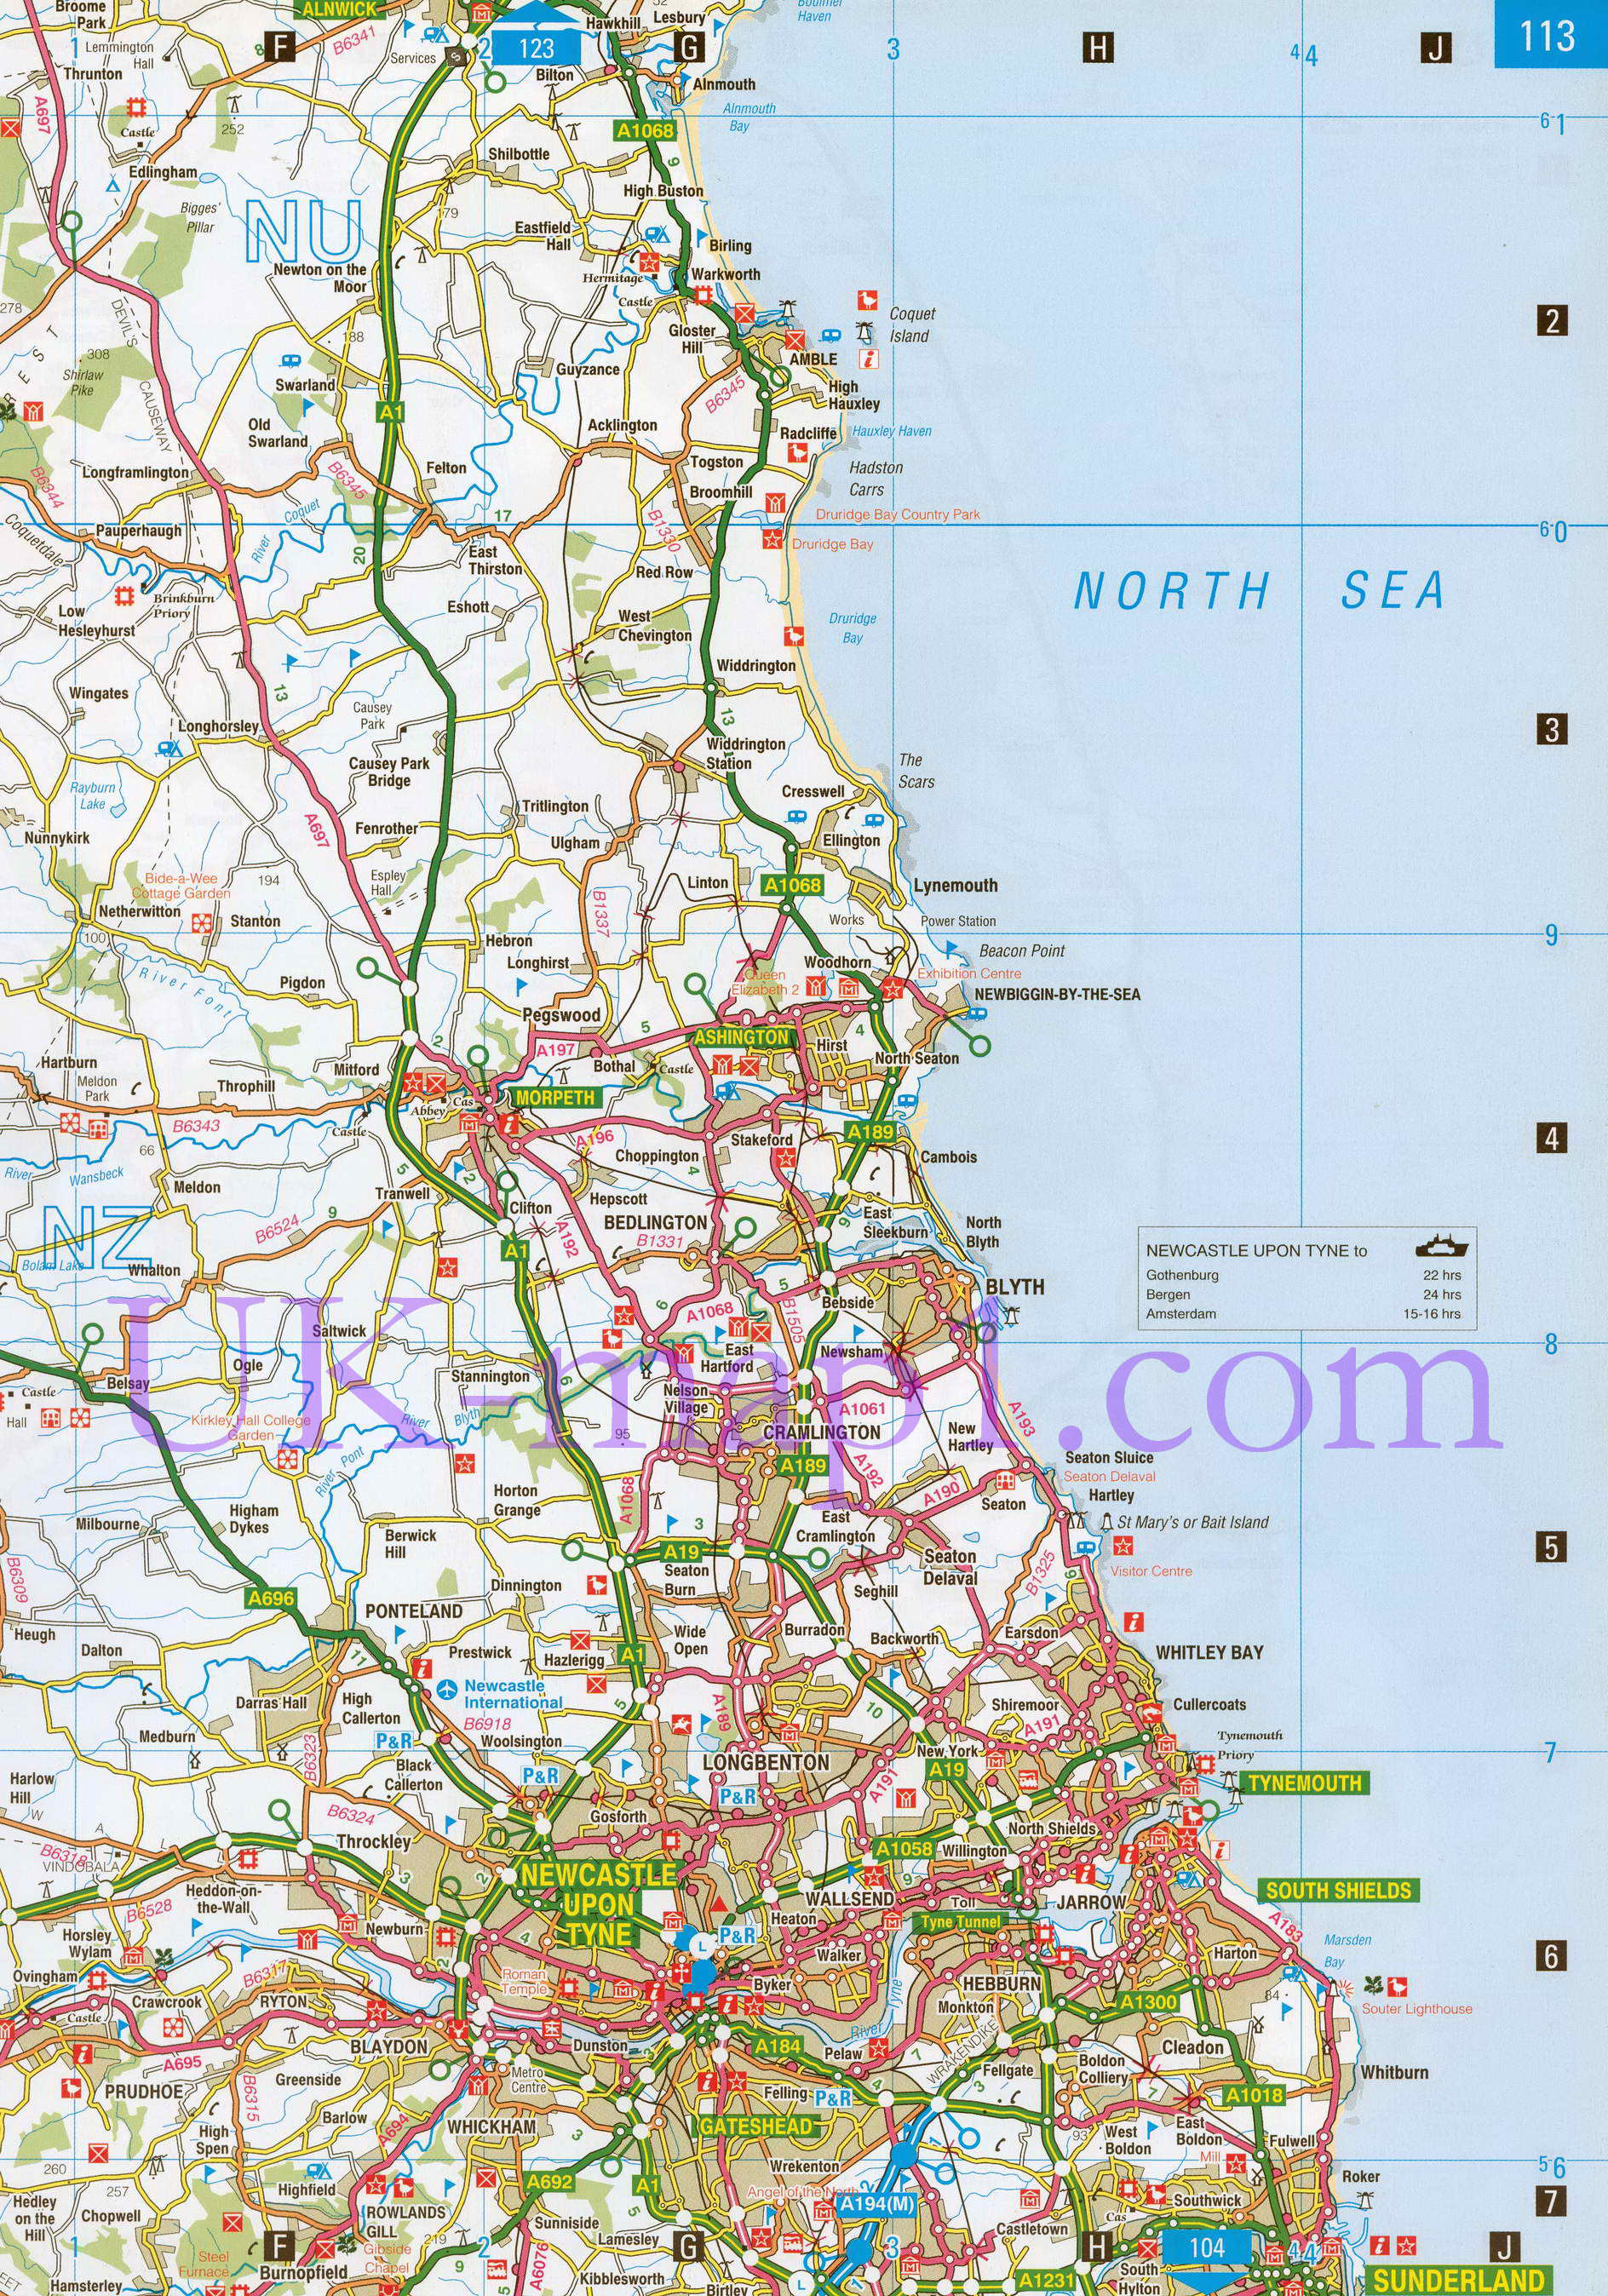 Карта графства Нортамберленд (север). Подробная карта автомобильных дорог графства Нортамберленд (Англия), B1 - 